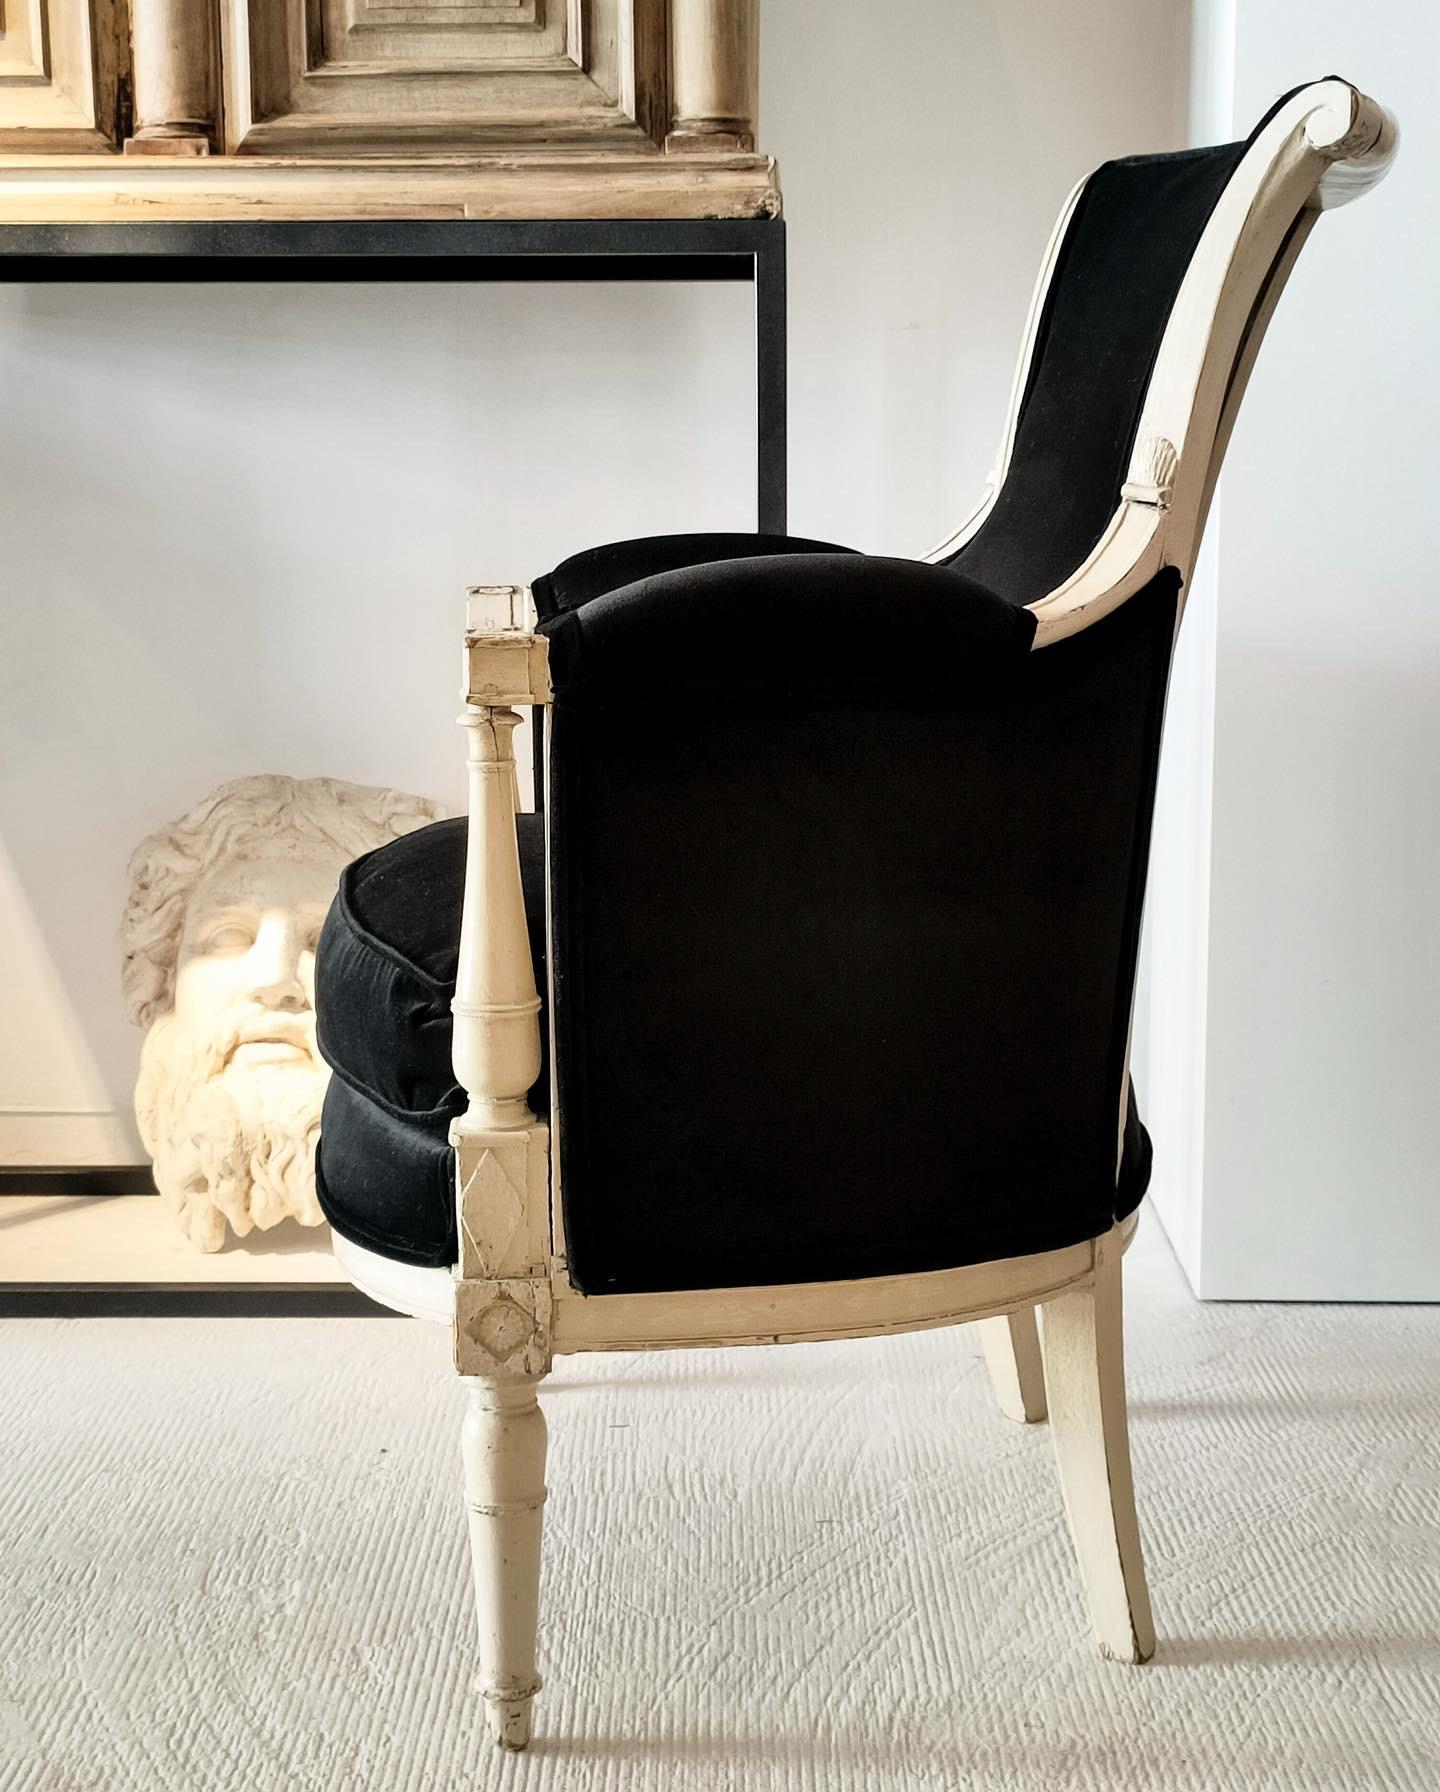 Antike 18. Jahrhundert Französisch Directoire Sessel bergere.
Er ist aus Buchenholz und Eiche gefertigt, cremeweiß lackiert und mit schwarzem Samt aus dem Hause Gastón y Daniela bezogen.
Es ist in perfektem Zustand der Nutzung, da seine Struktur